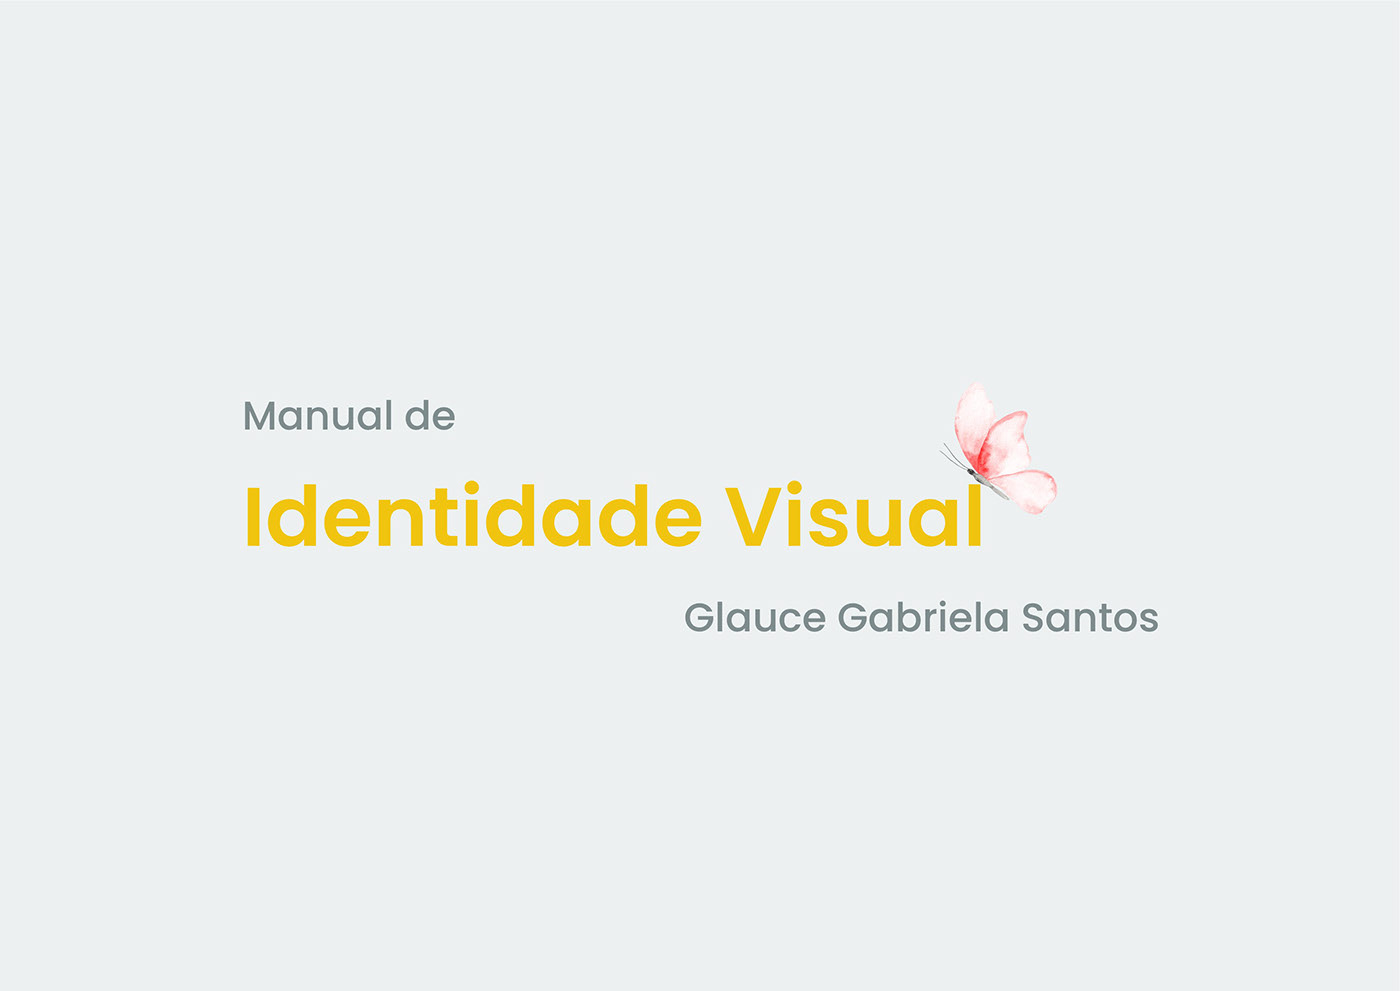 design design gráfico designdeidentidadevisual identidade visual identity manual de identidade Manual de Marca visual ciencia psiquiatra